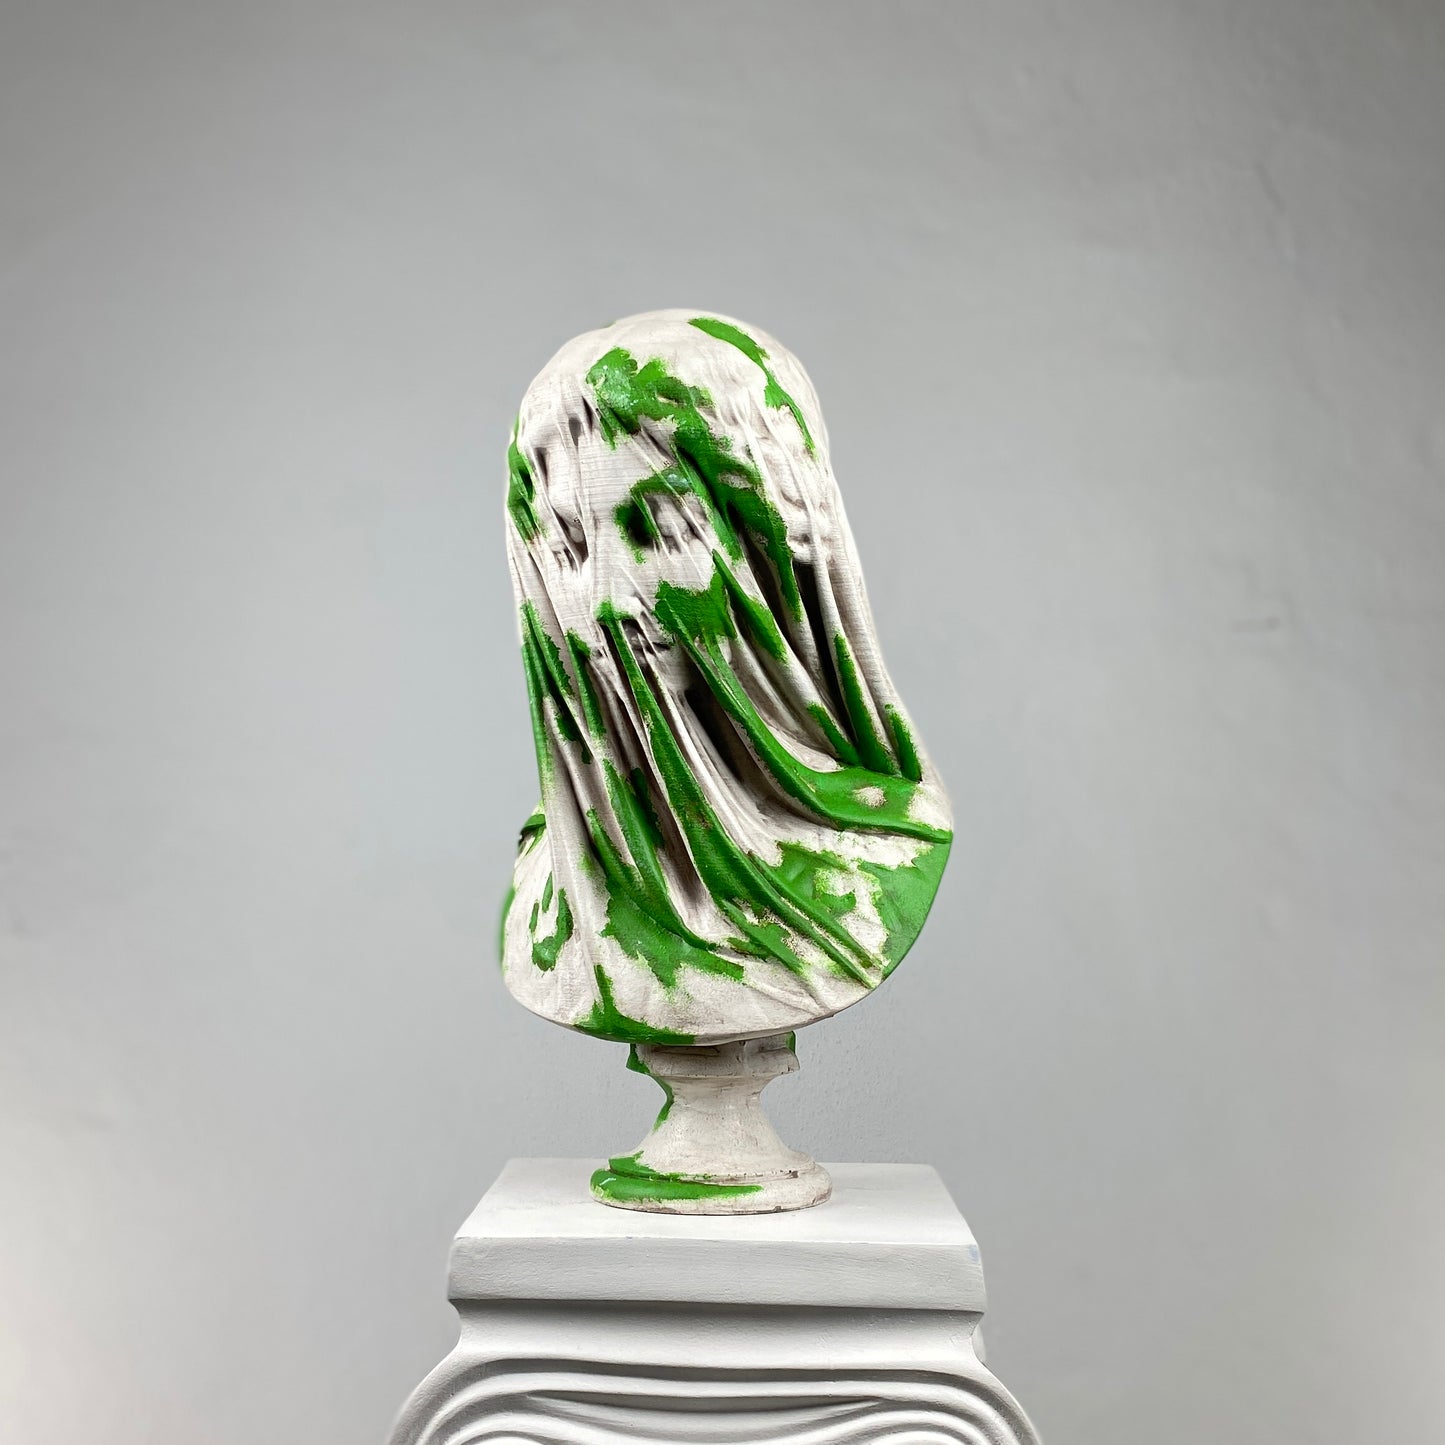 Mariam 'Mossy' Pop Art Sculpture, Modern Home Decor